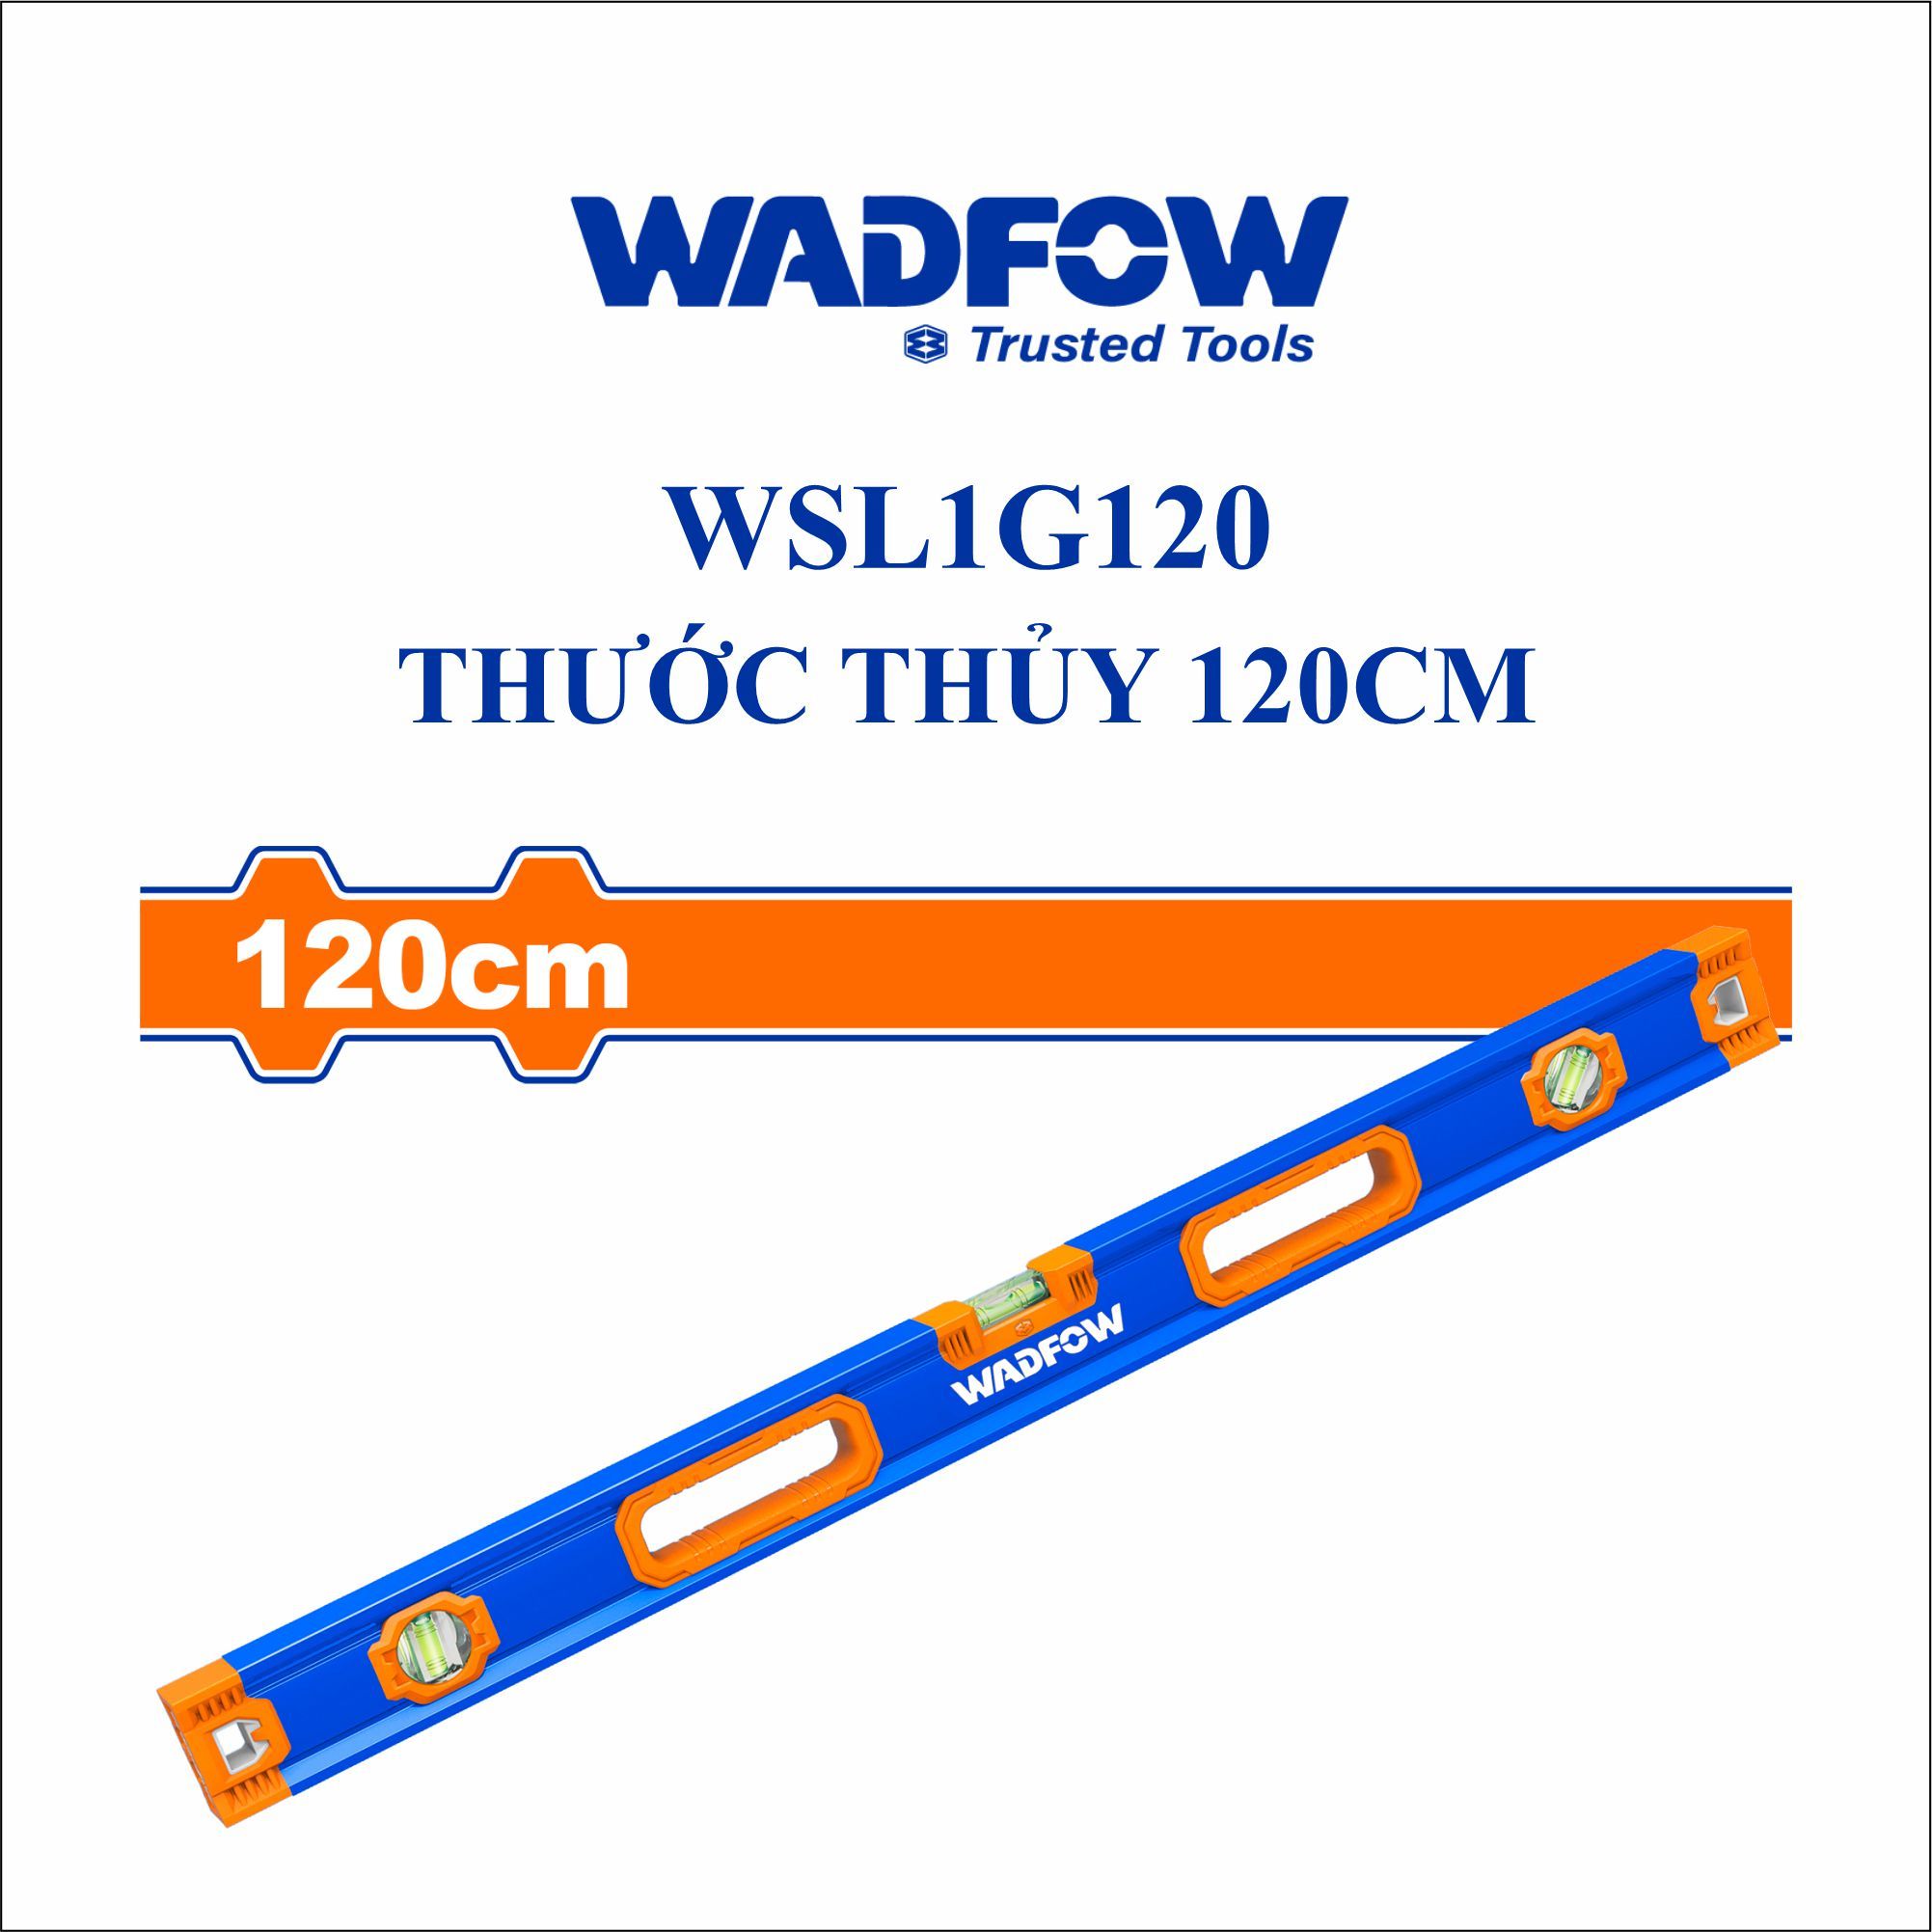  Thước thủy 120cm WADFOW WSL1G120 